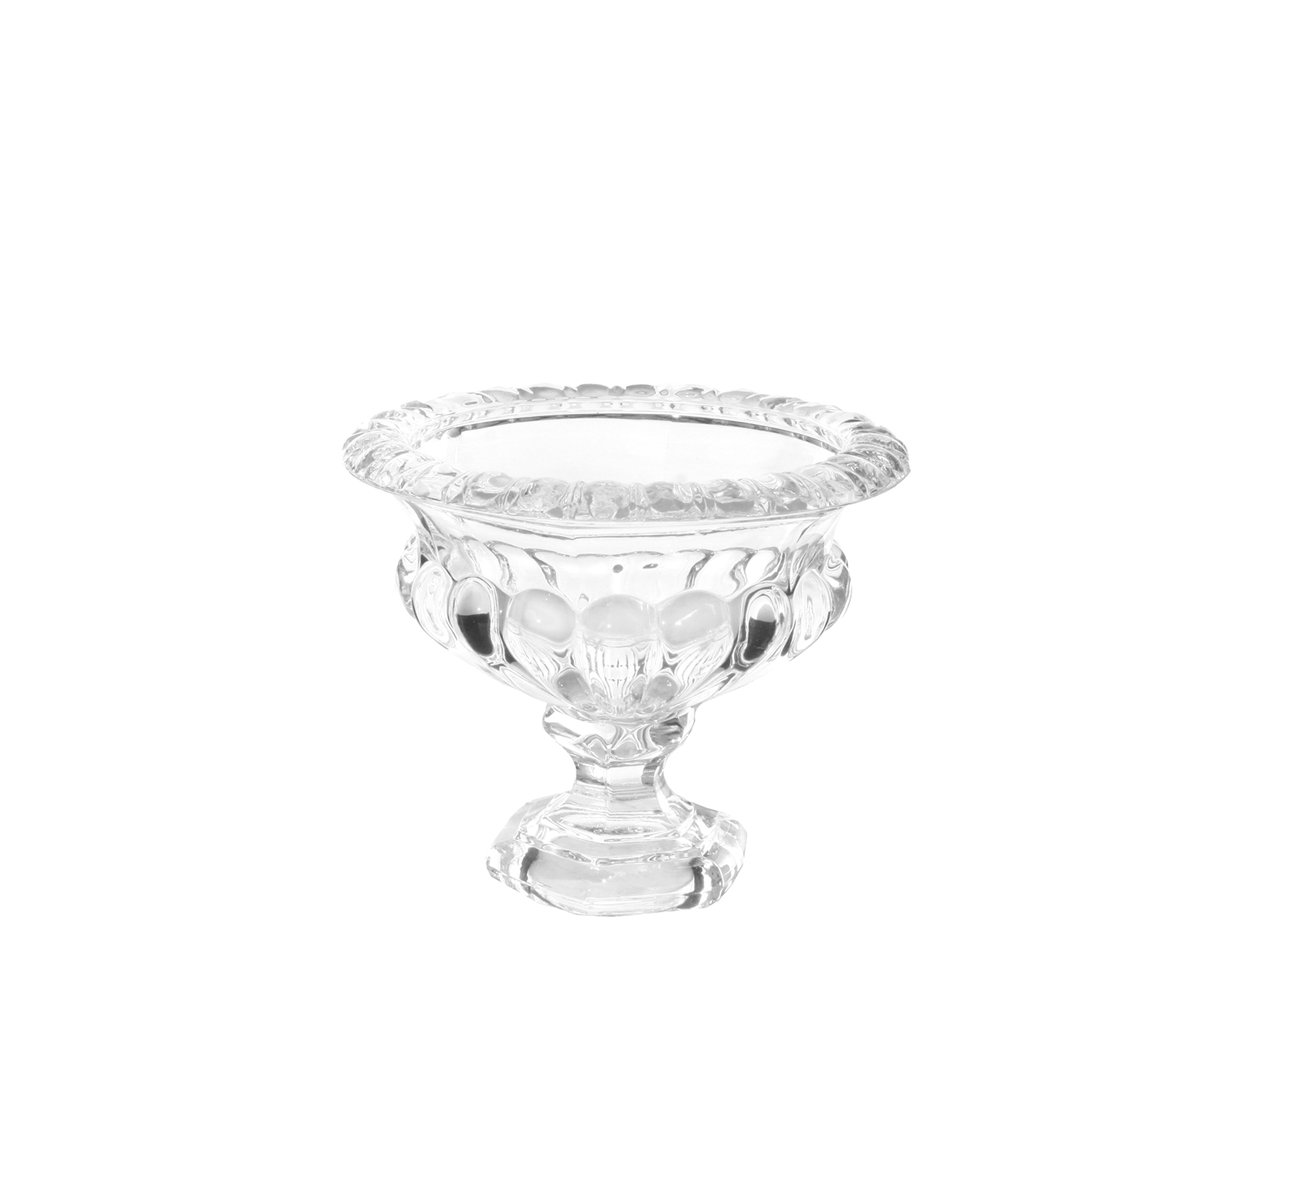 Lille glasskål/-vase på fod 
H: 11 cm